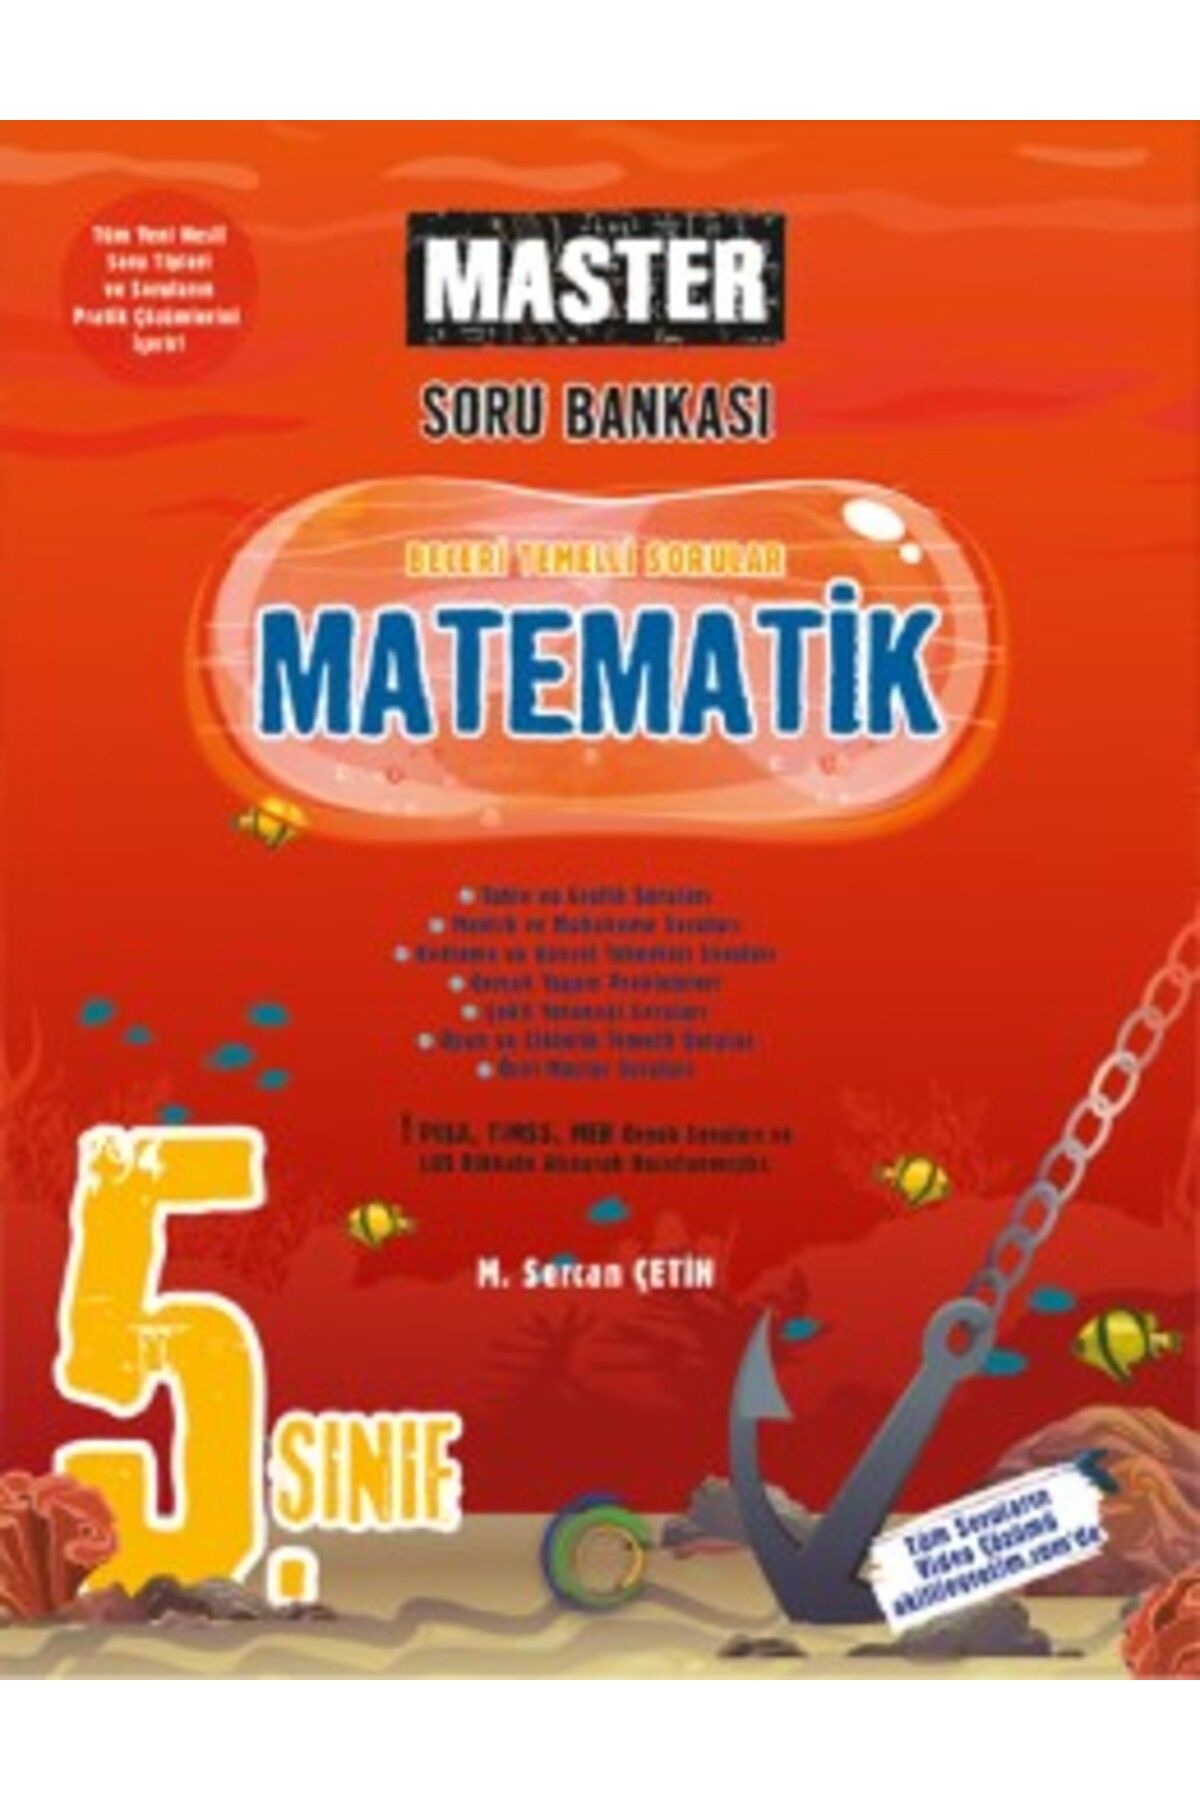 Okyanus Yayınları 5.sınıf Matematik Master S.bankası Okyanus